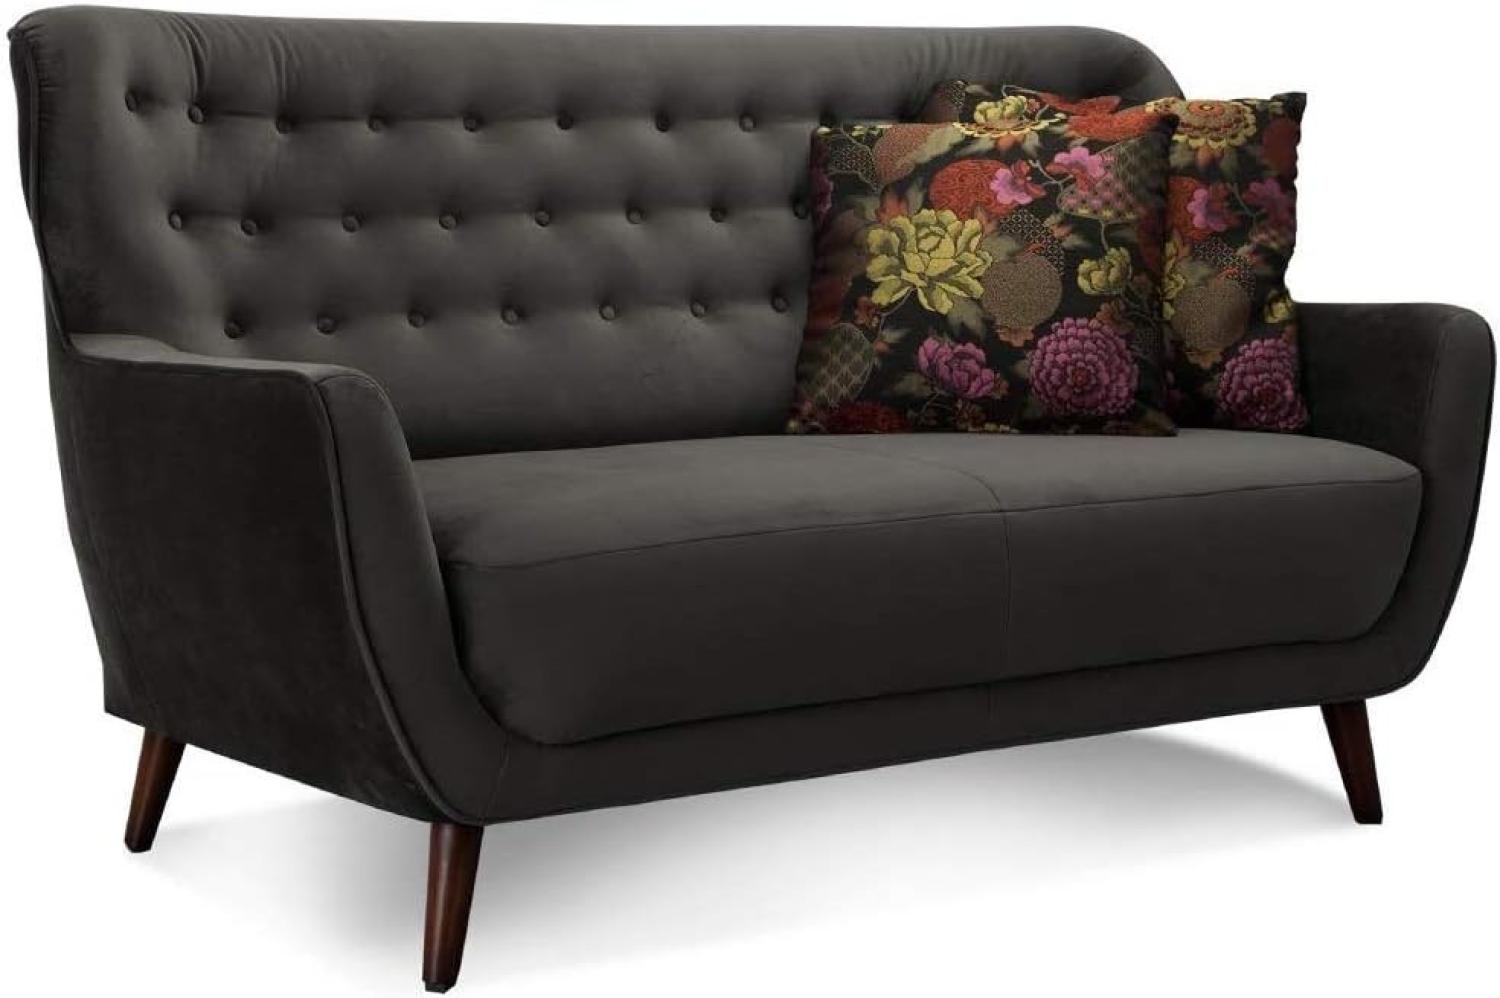 CAVADORE 2-Sitzer-Sofa Abby / Retro-Couch mit Samtbezug und Knopfheftung / 153 x 89 x 88 / Samtoptik, grau Bild 1